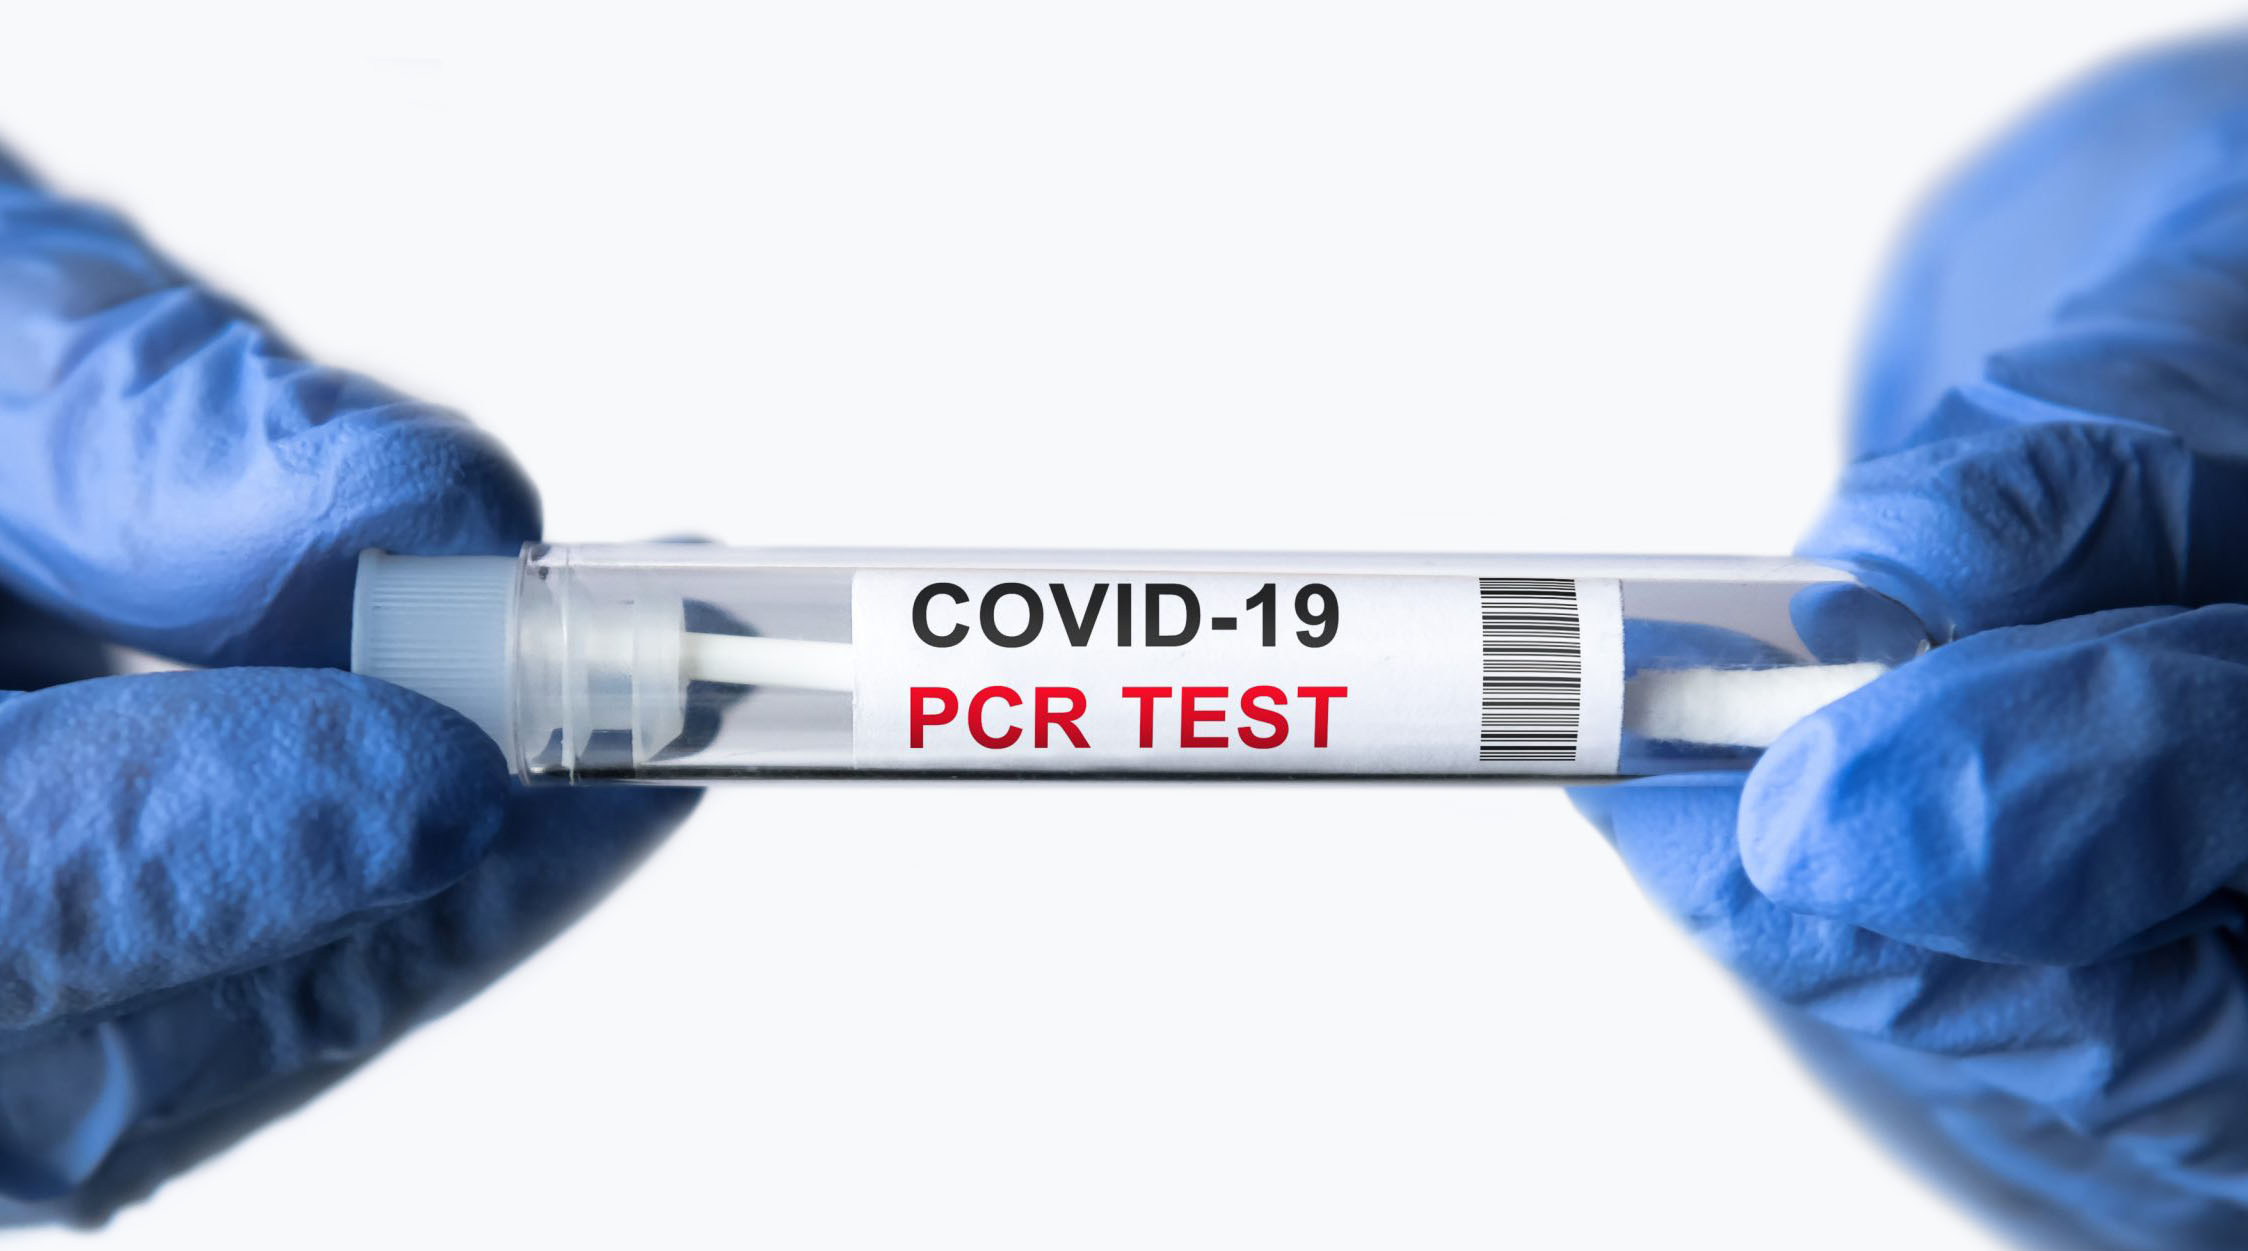 Môžu používané testy určené na diagnostiku ochorenia Covid-19 vyhodnotiť aj iné infekčné či respiračné ochorenie, ako Covid-19 pozitívne?